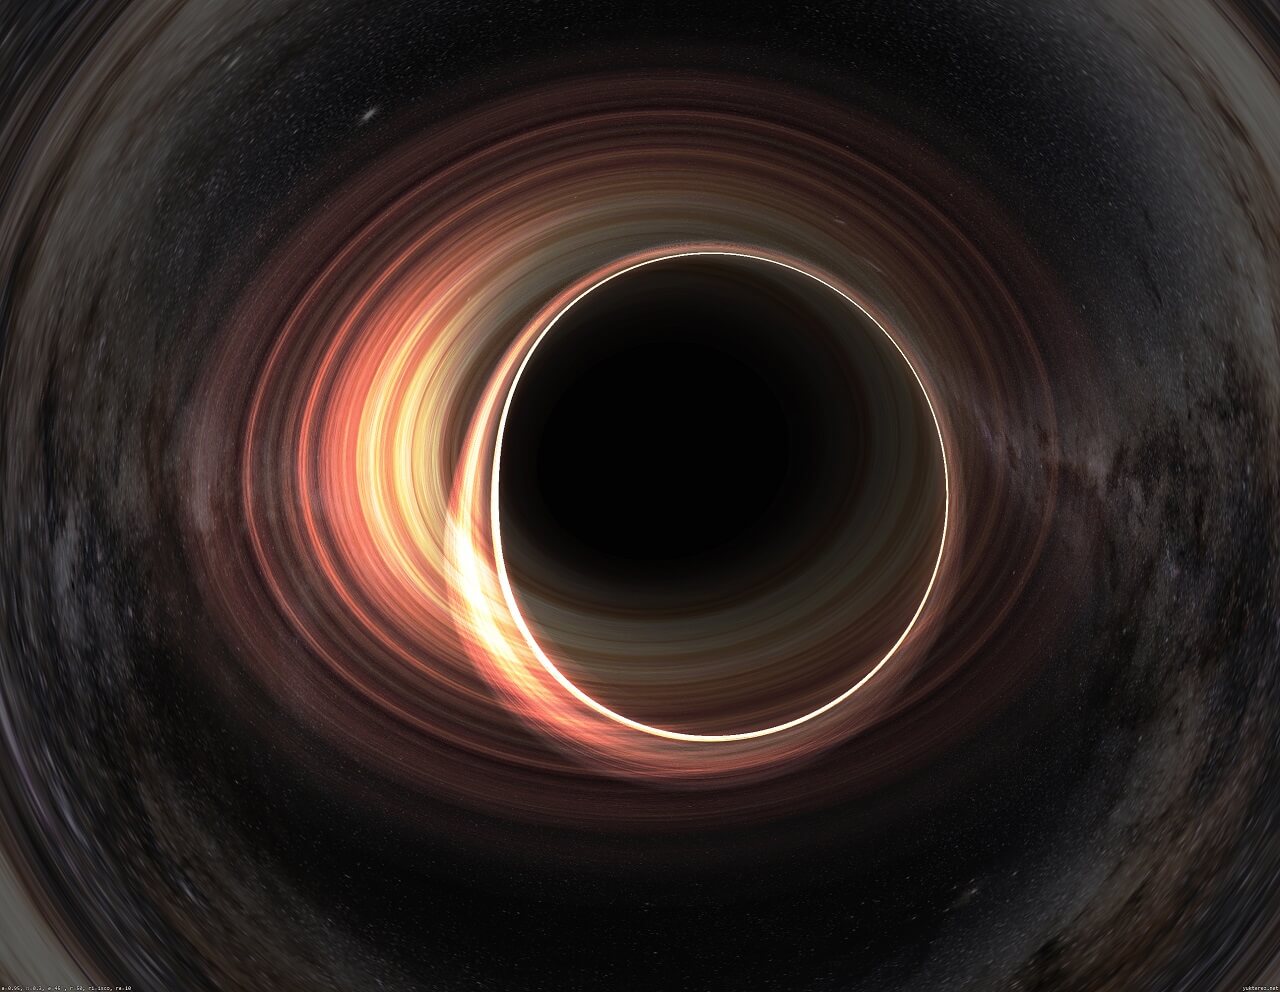 მეცნიერებმა ლაბორატორიაში შავი ხვრელის ანალოგი შექმნეს, რომელმაც ვარვარება დაიწყო — #1tvმეცნიერება